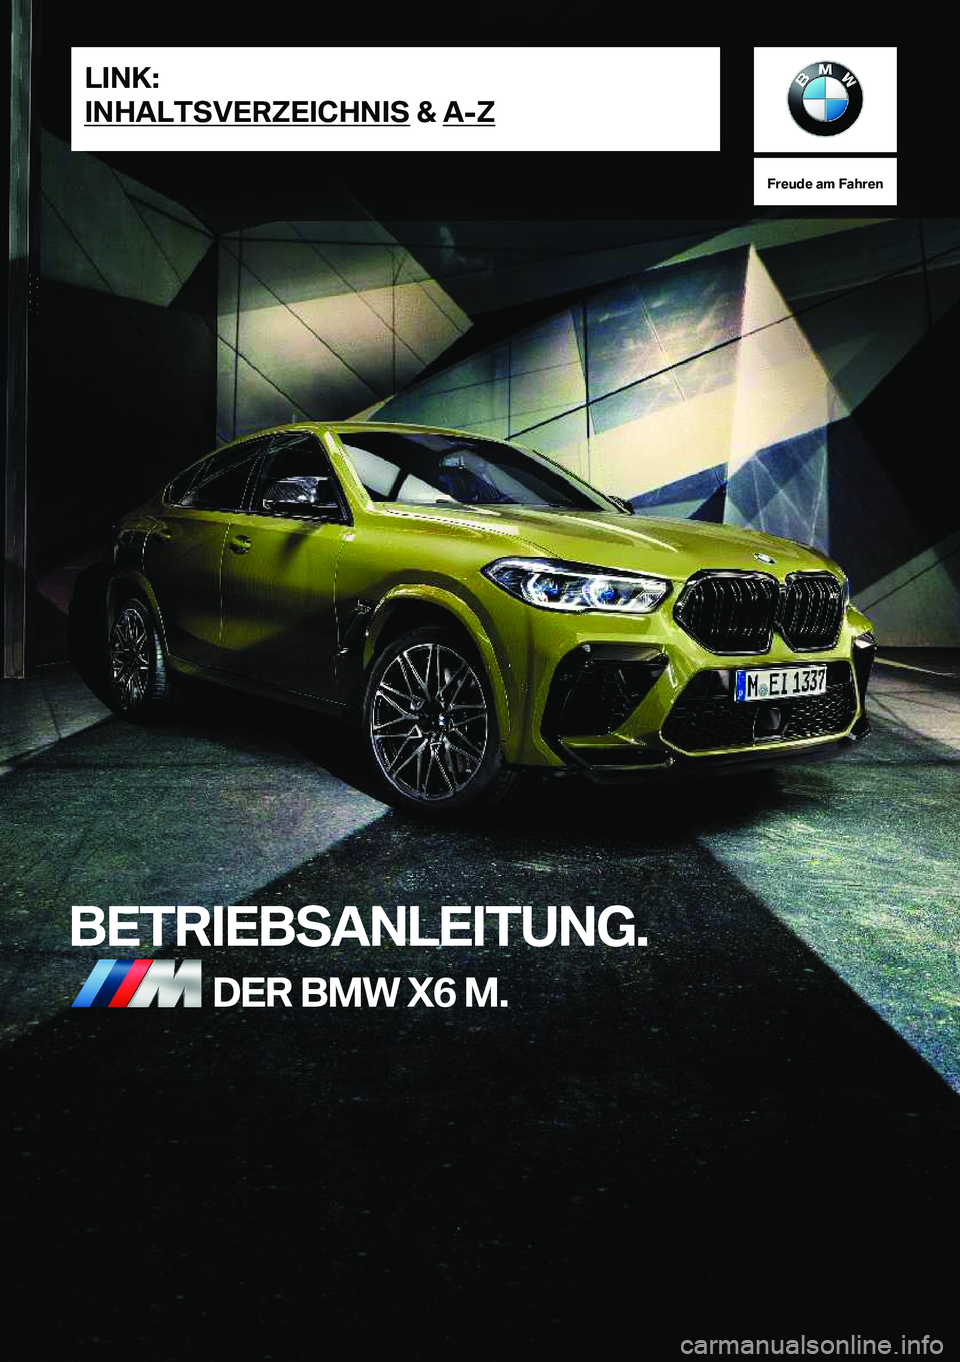 BMW X6 M 2020  Betriebsanleitungen (in German) �F�r�e�u�d�e��a�m��F�a�h�r�e�n
�B�E�T�R�I�E�B�S�A�N�L�E�I�T�U�N�G�.�D�E�R��B�M�W��X�6��M�.�L�I�N�K�:
�I�N�H�A�L�T�S�V�E�R�Z�E�I�C�H�N�I�S��&��A�-�Z�O�n�l�i�n�e��V�e�r�s�i�o�n��f�